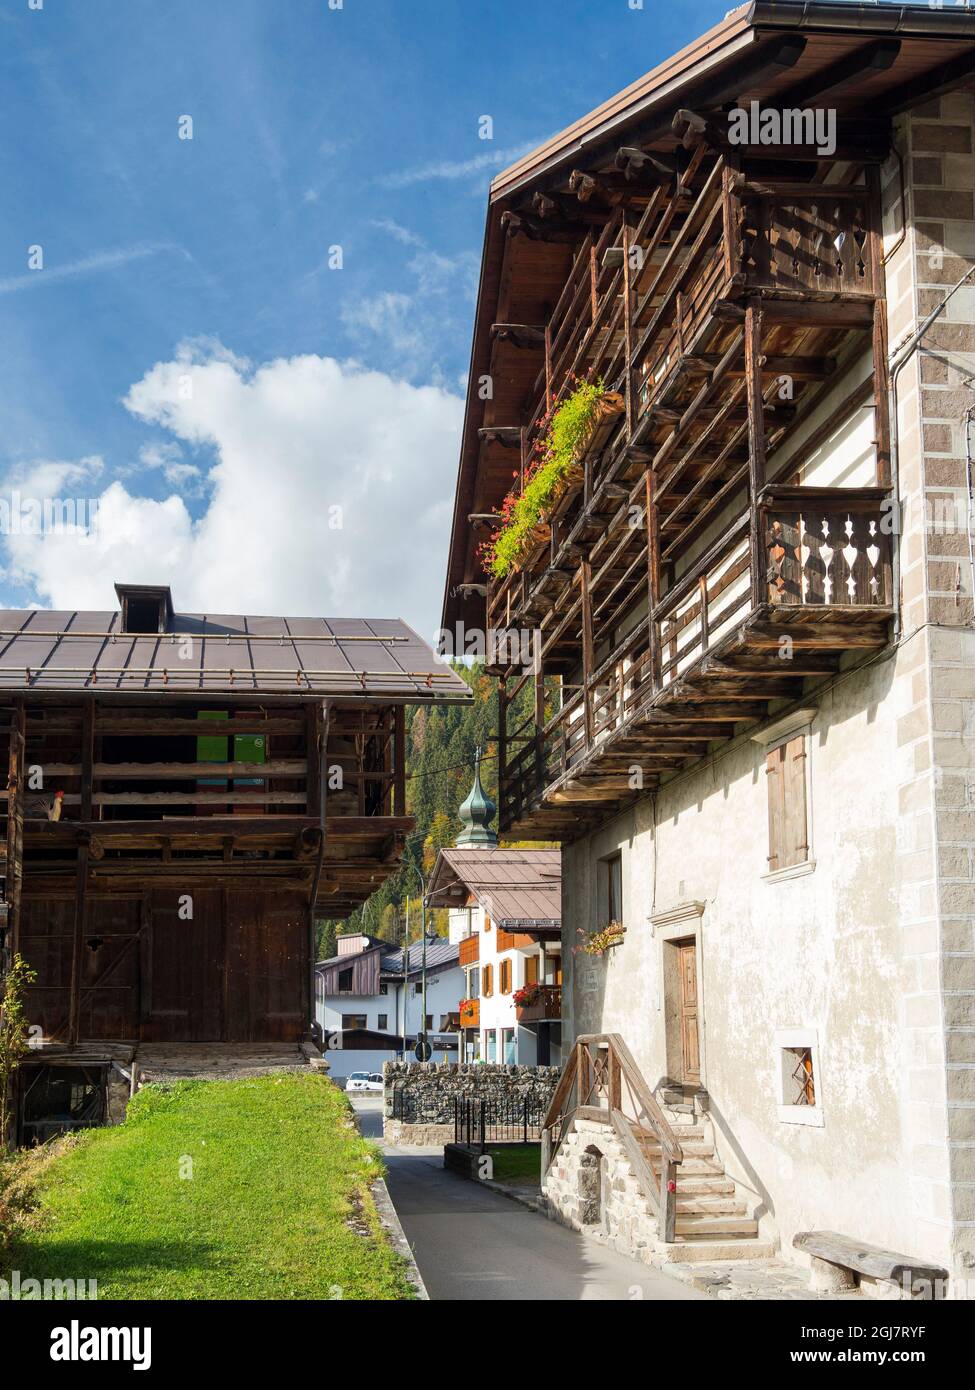 Canale d'Agordo, tradizionale architettura alpina in Val Biois, Italia. (Solo per uso editoriale) Foto Stock